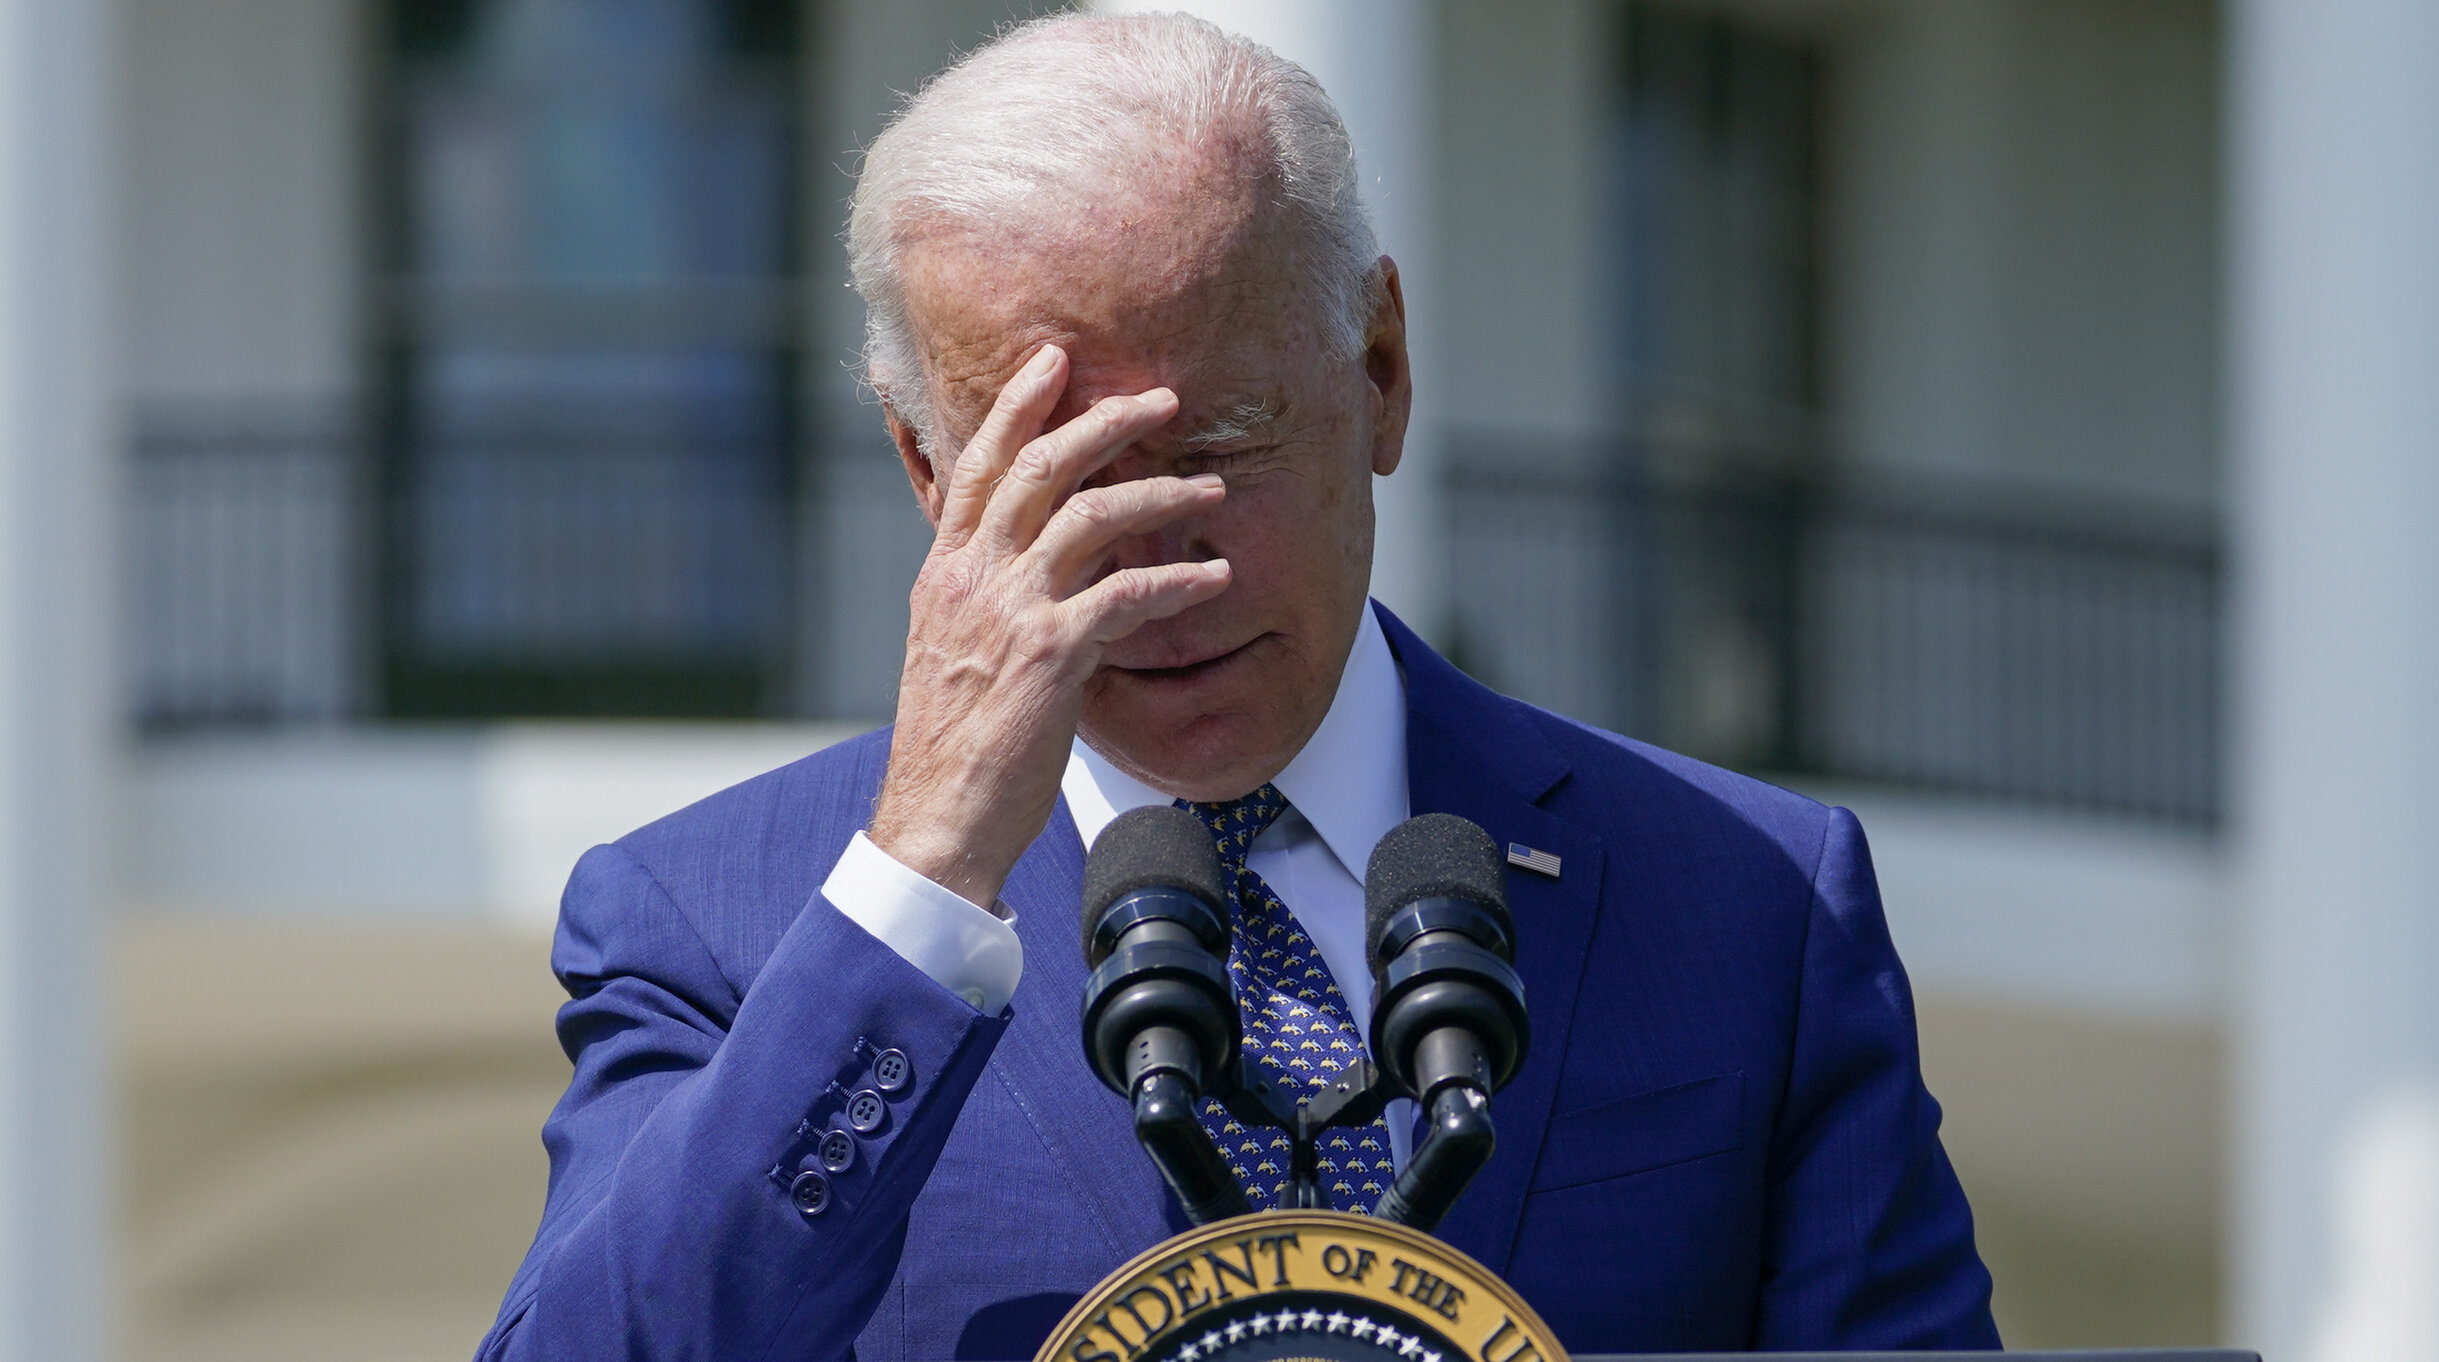 Dezastrul din Afganistan poate distruge administrația Biden, potrivit analiștilor